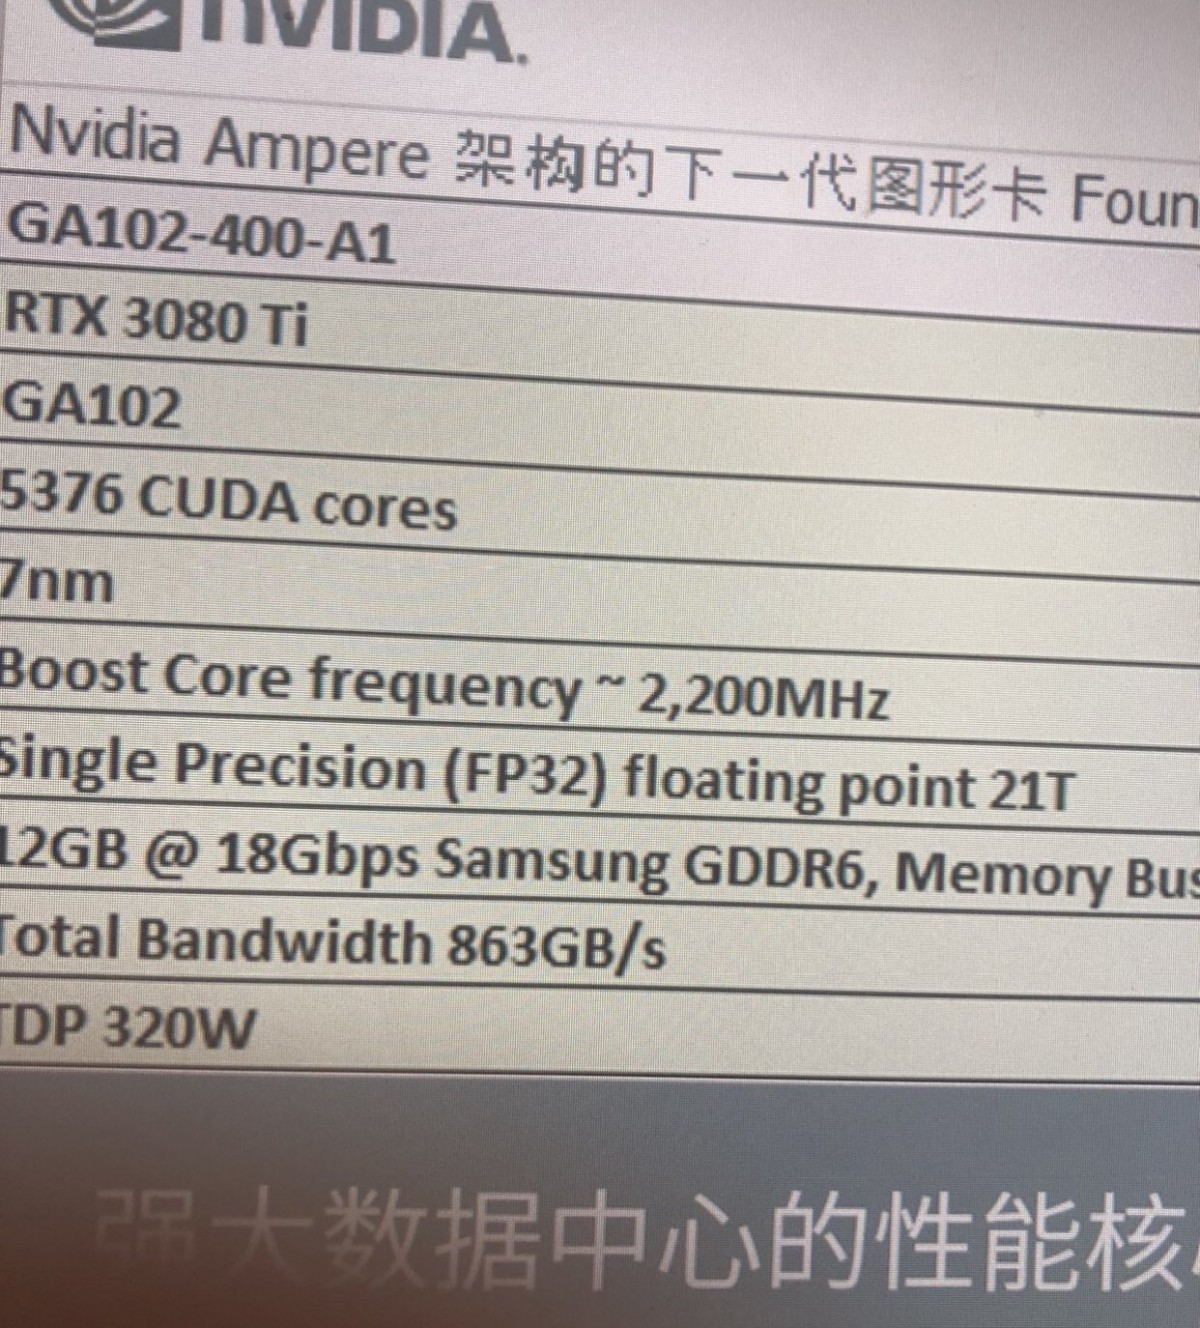 Un improbable premier screenshot des spécifications techniques d'une carte graphique Nvidia RTX 3080 Ti